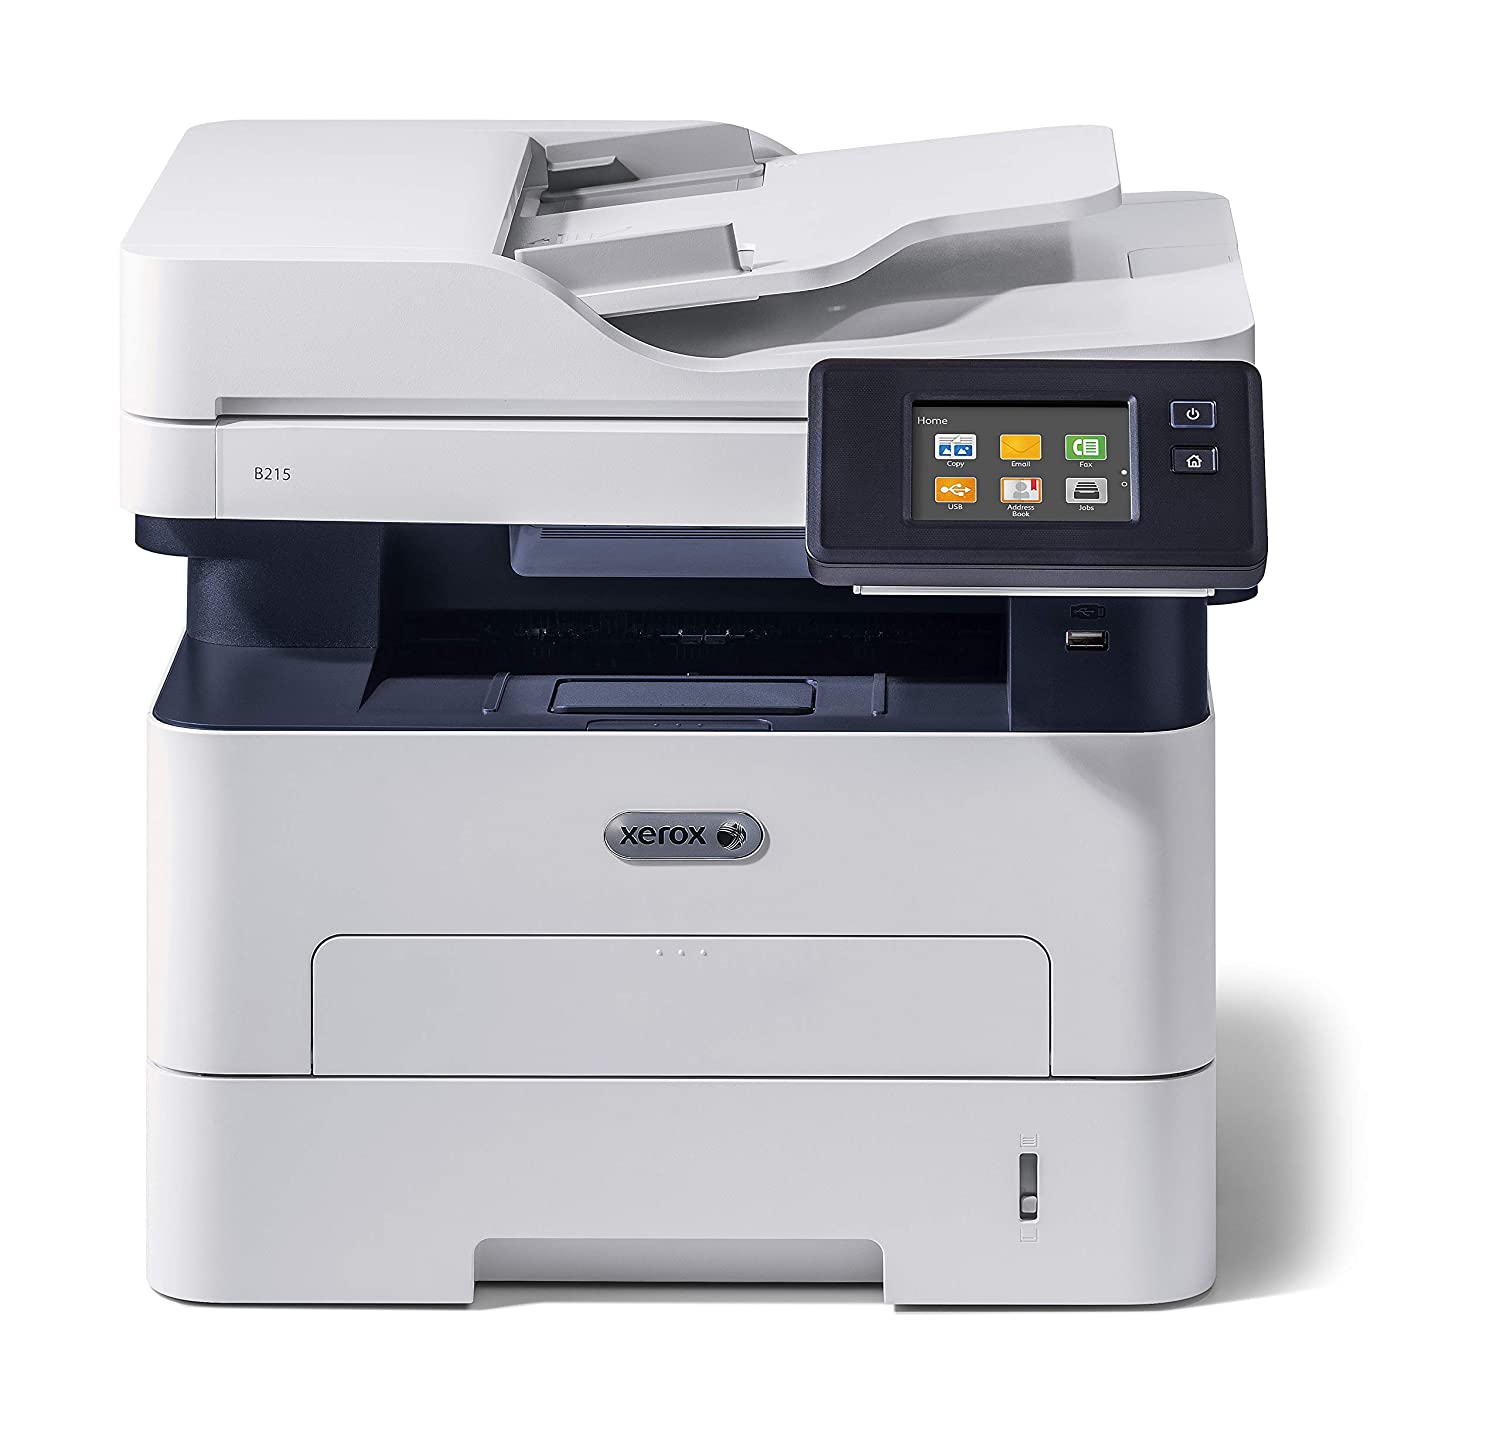 Xerox Printer Repair